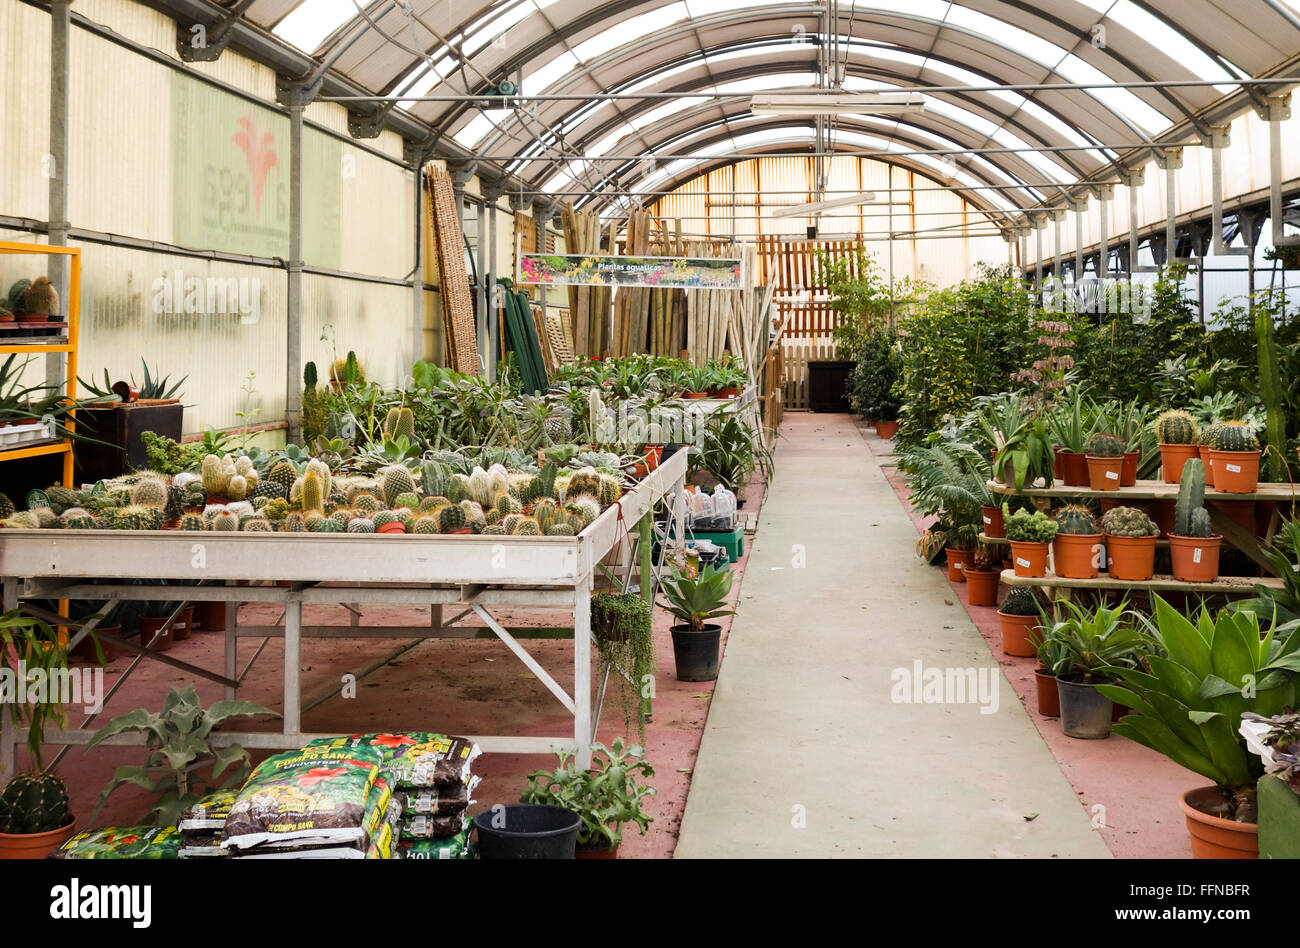 Gewächshaus im Gartencenter, Einzelhandel Gärtnerei Pflanzen bietet. Blumen. Spanien. Stockfoto